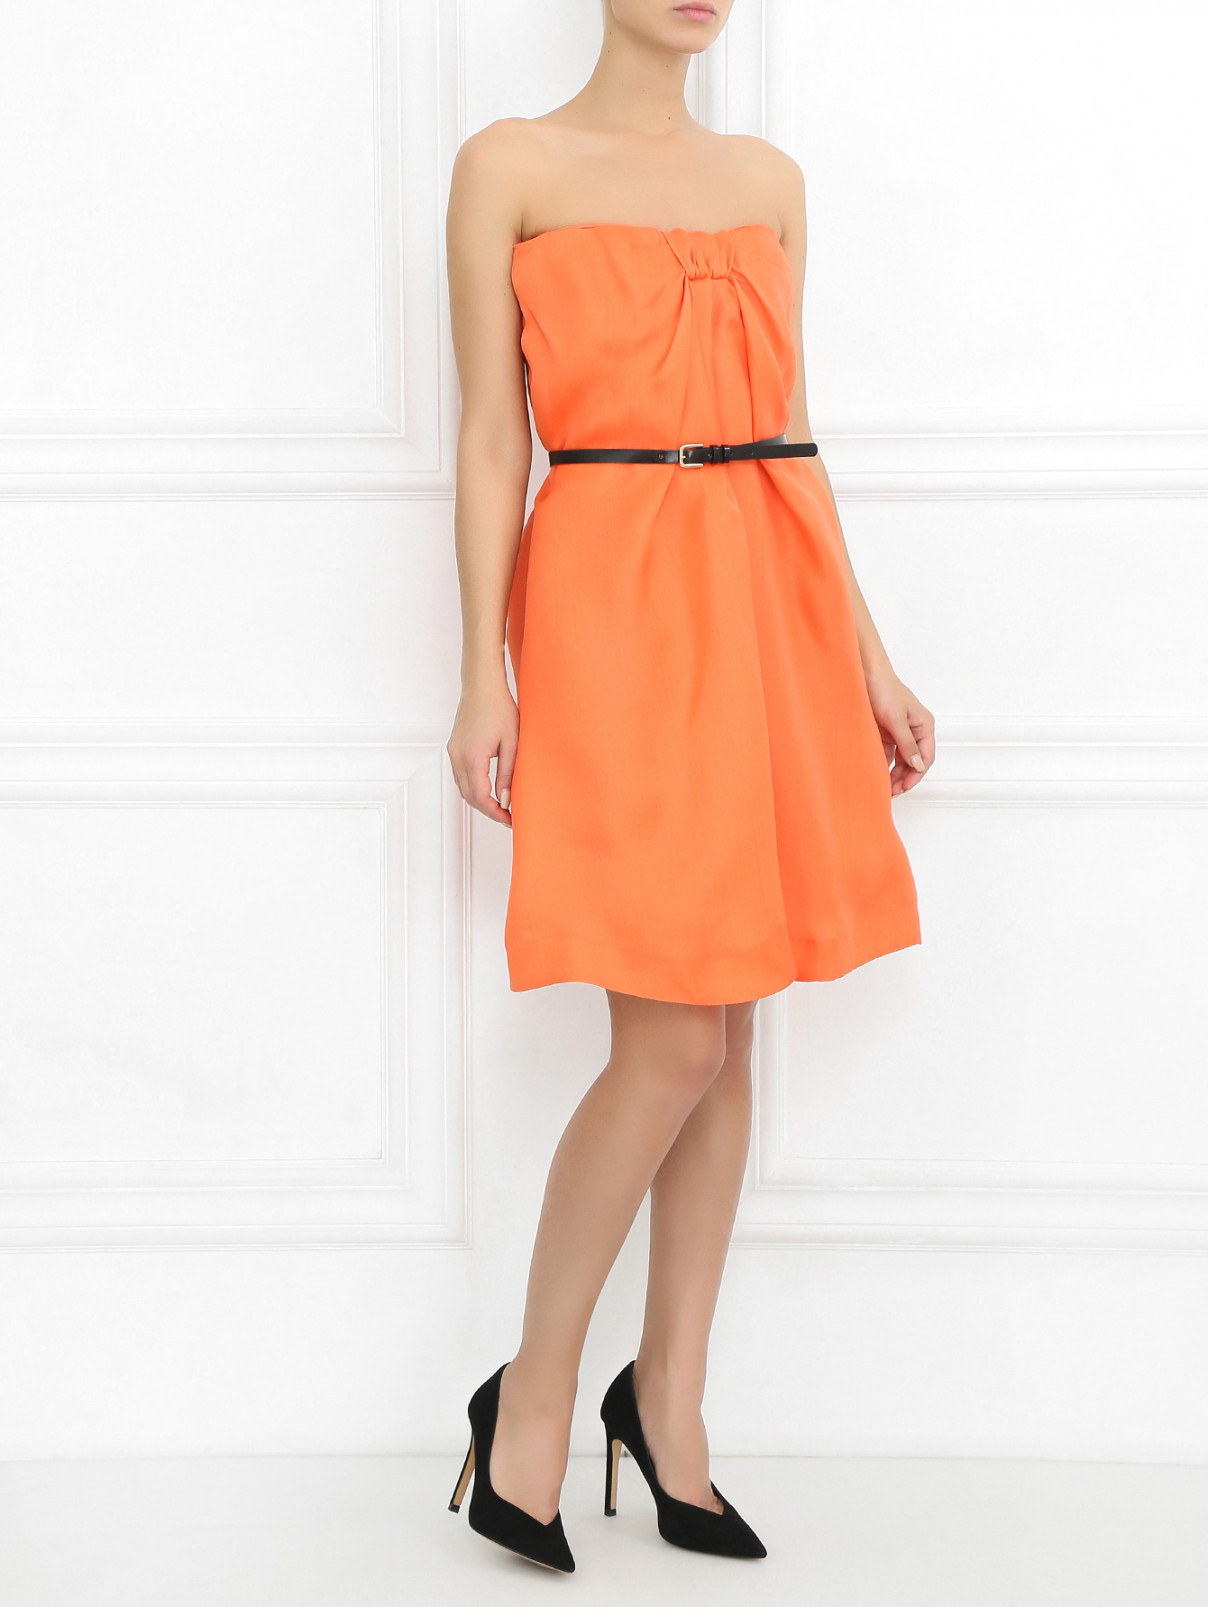 Мини-платье с ремнем Paul&Joe  –  Модель Общий вид  – Цвет:  Оранжевый